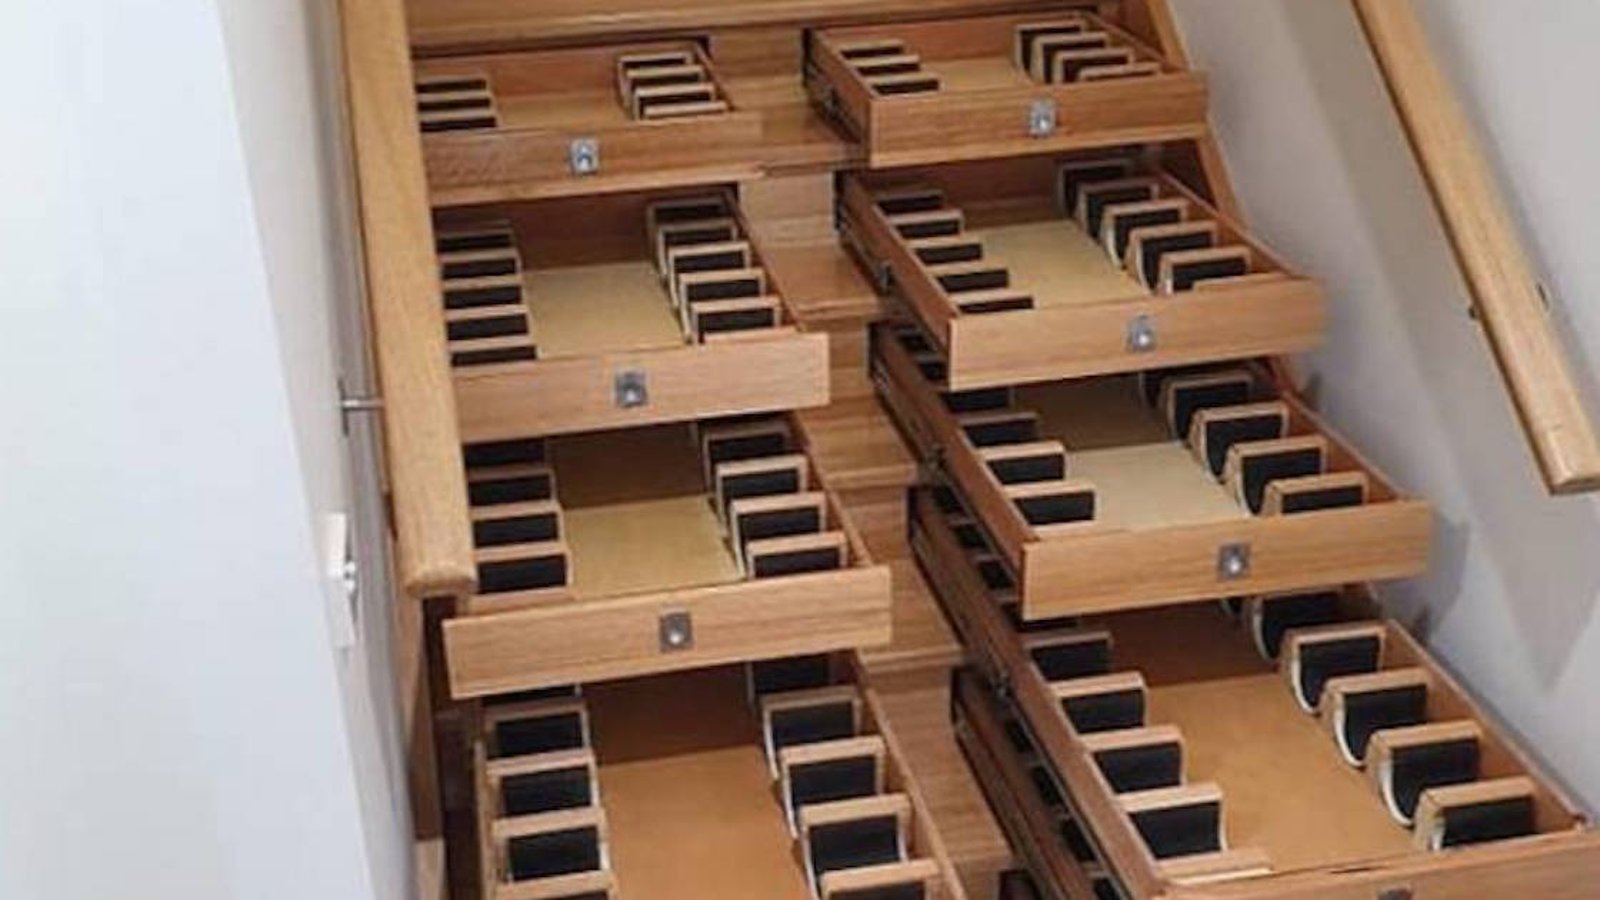 Un homme ingénieux a transformé son escalier en cave à vin pour 156 bouteilles